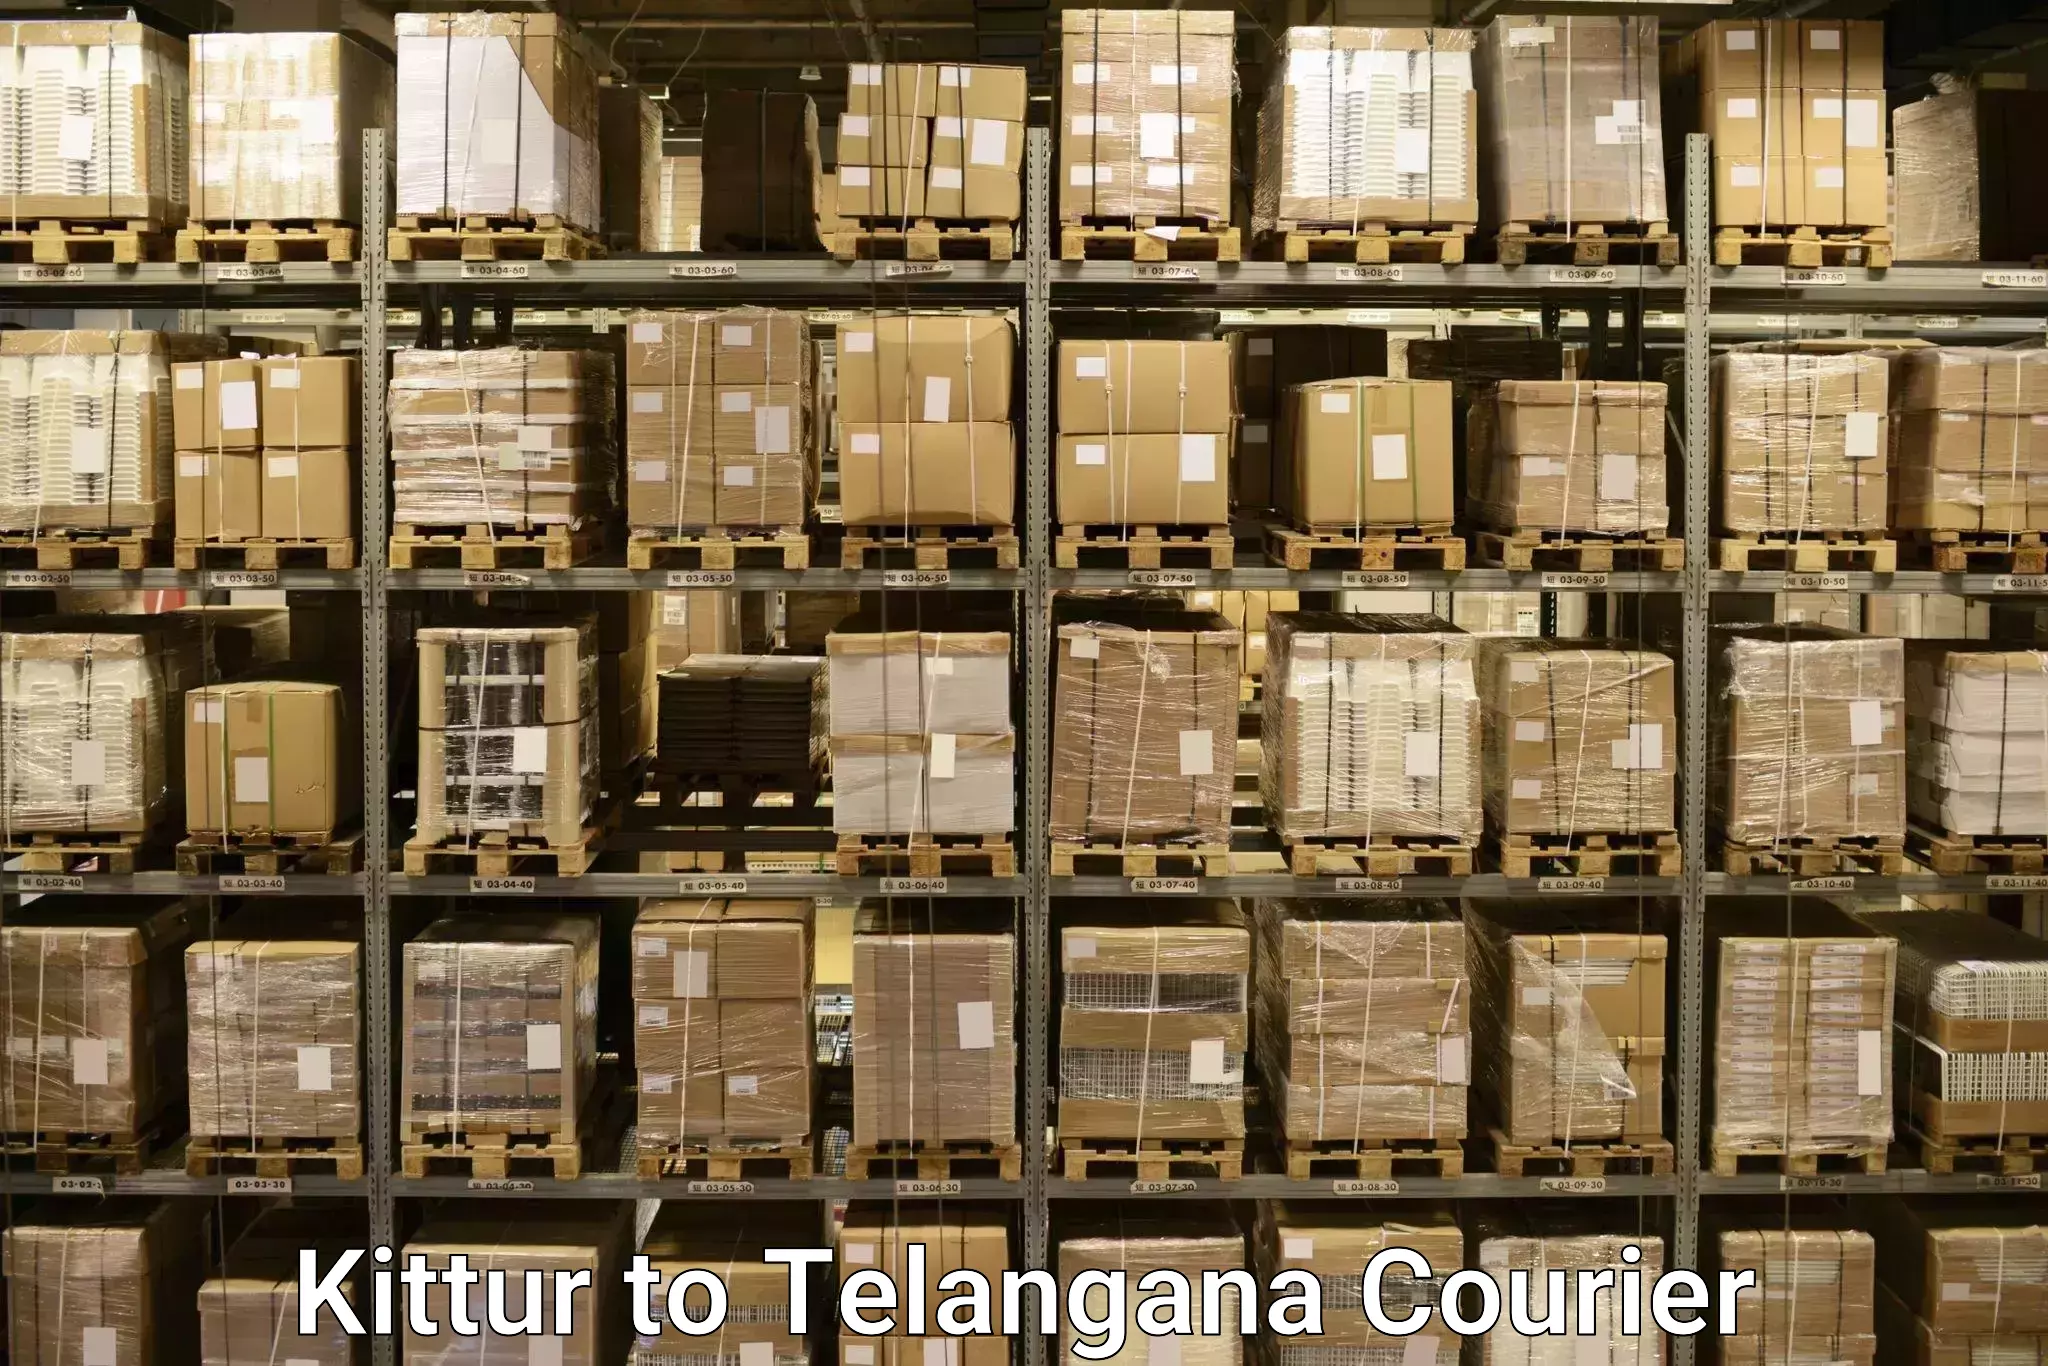 Luggage dispatch service Kittur to Manneguda